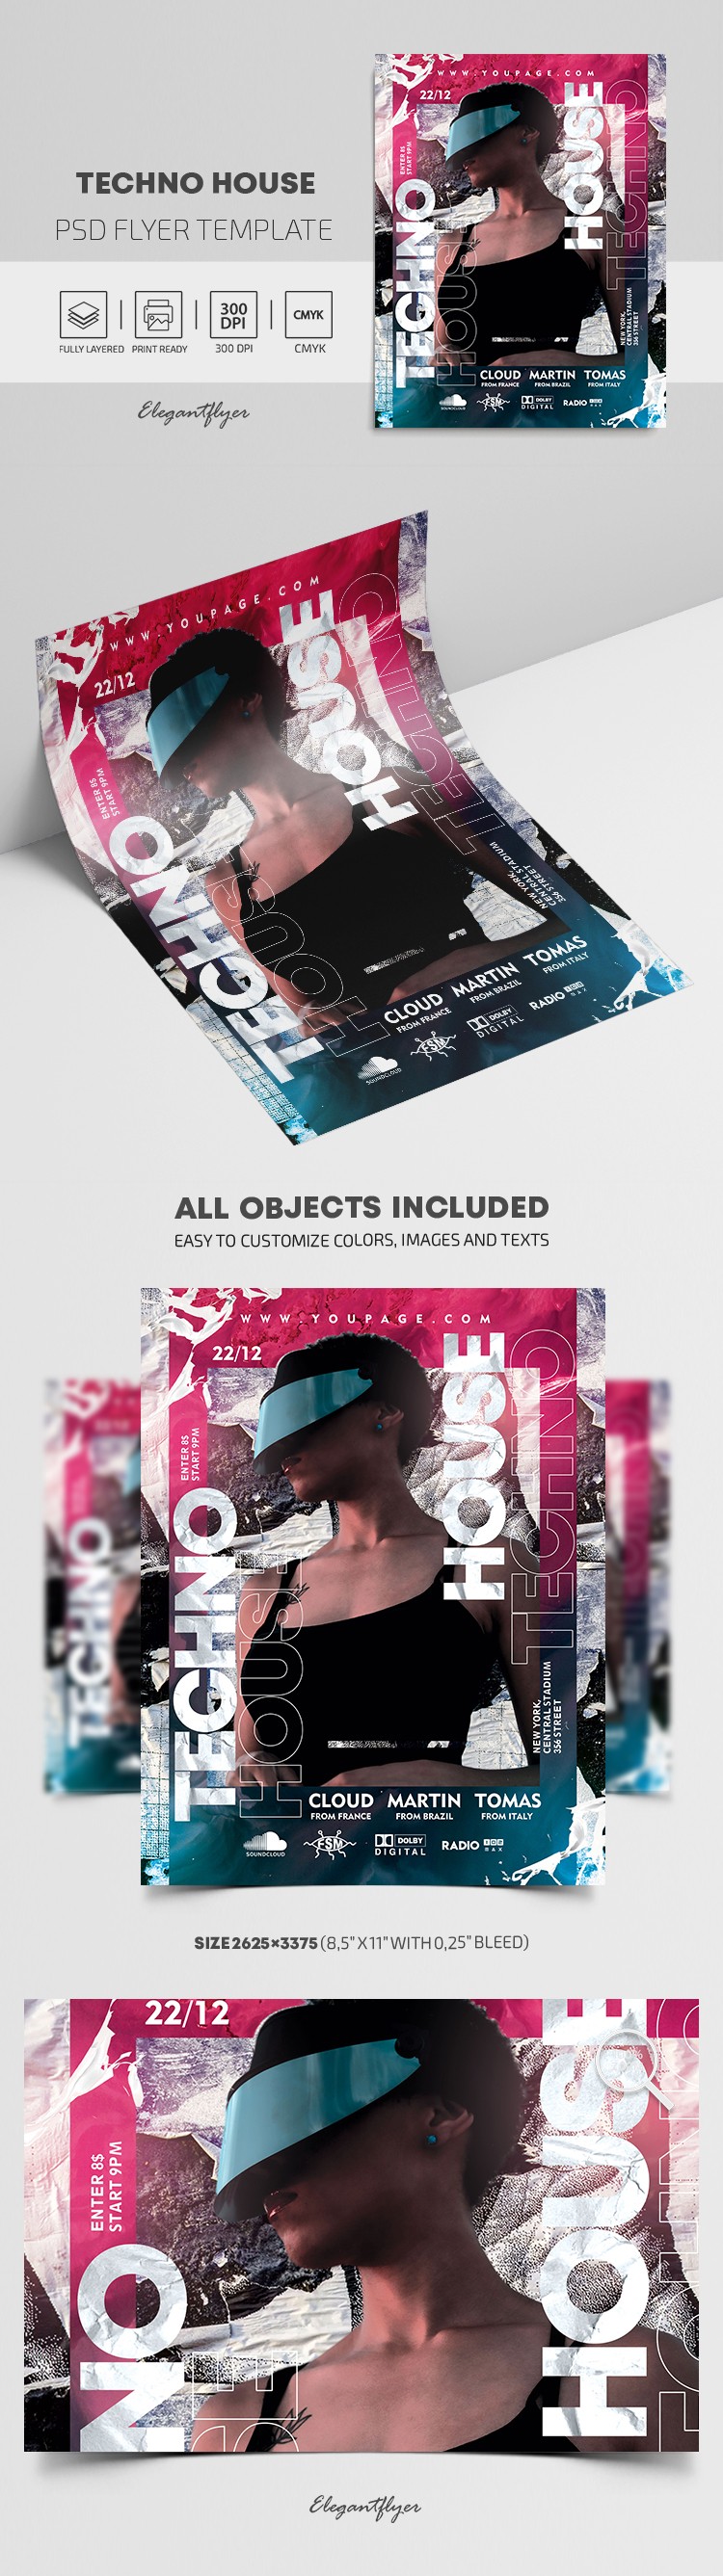 Plakat imprezy Techno House by ElegantFlyer